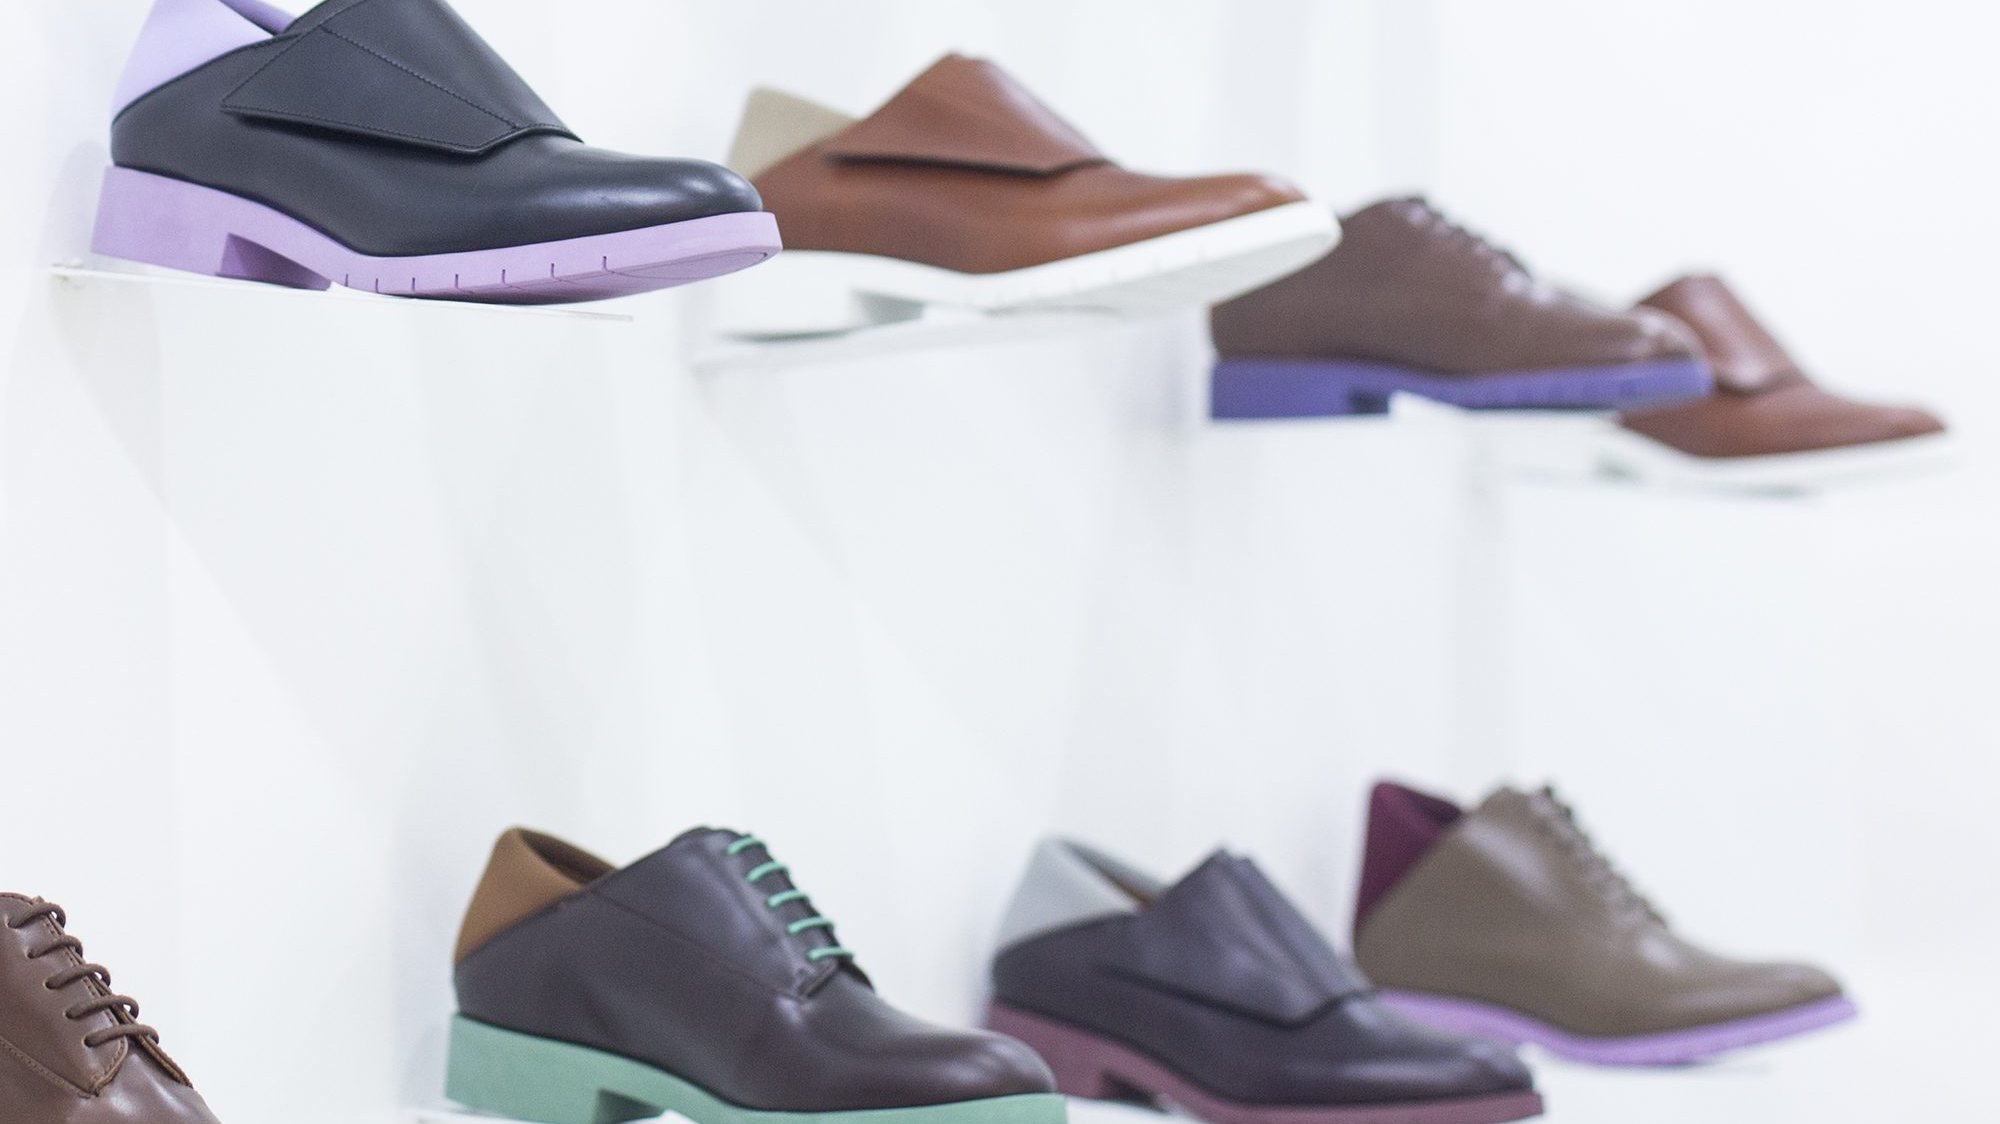 Os dados mais recentes relativos ao comércio global de calçado apontam que, no primeiro semestre de 2020, as importações de calçado caíram em quase todos os países